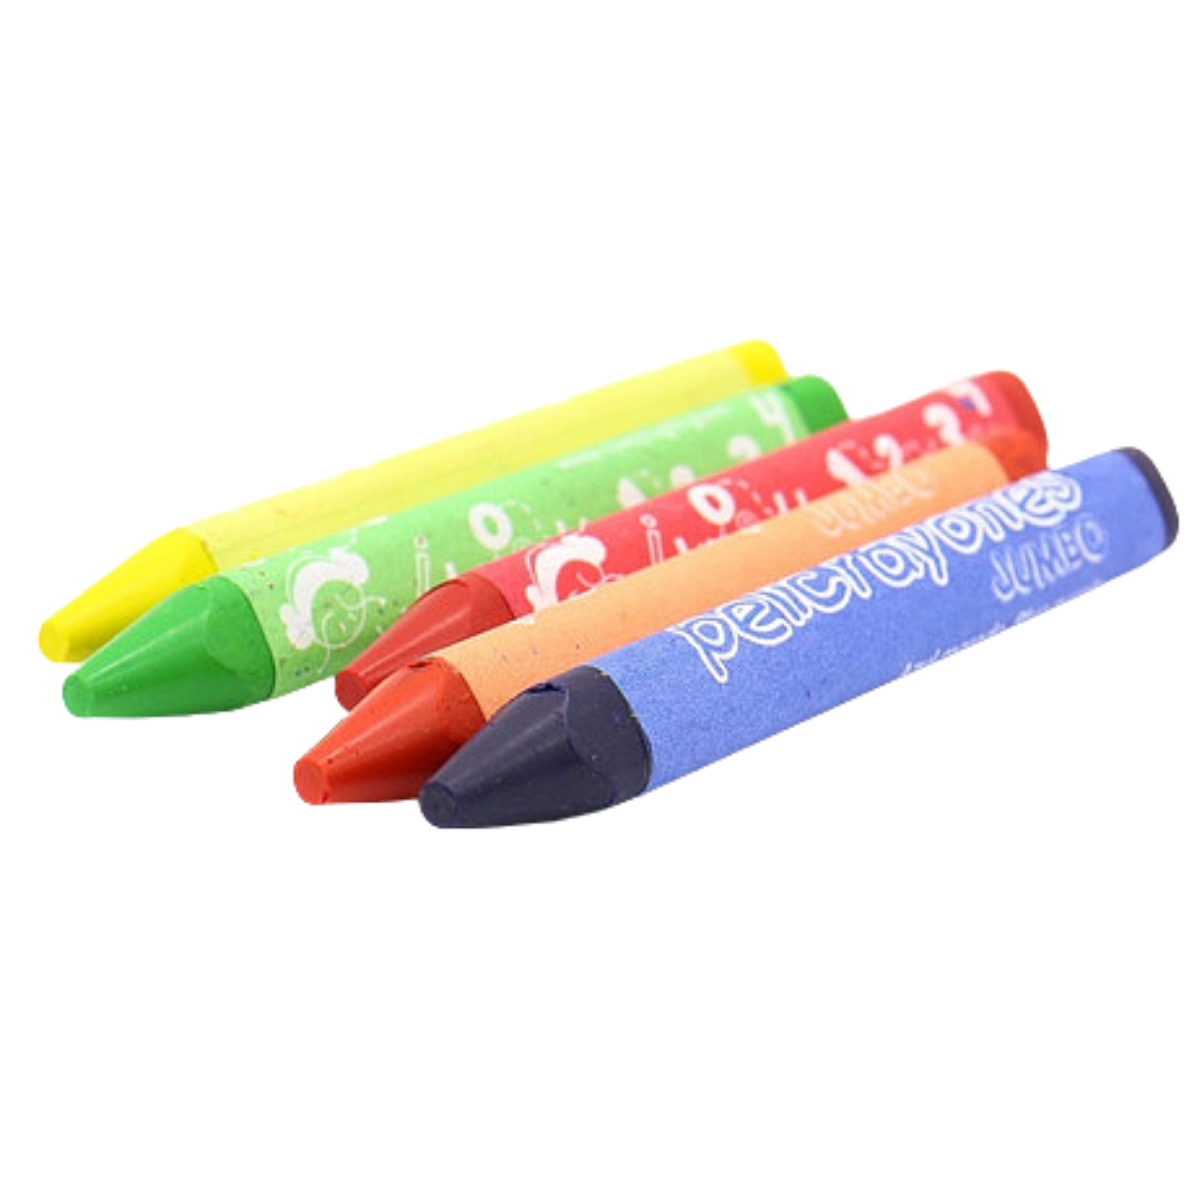 Crayones de Cera Jumbo Redondo Pelikan 6 Piezas